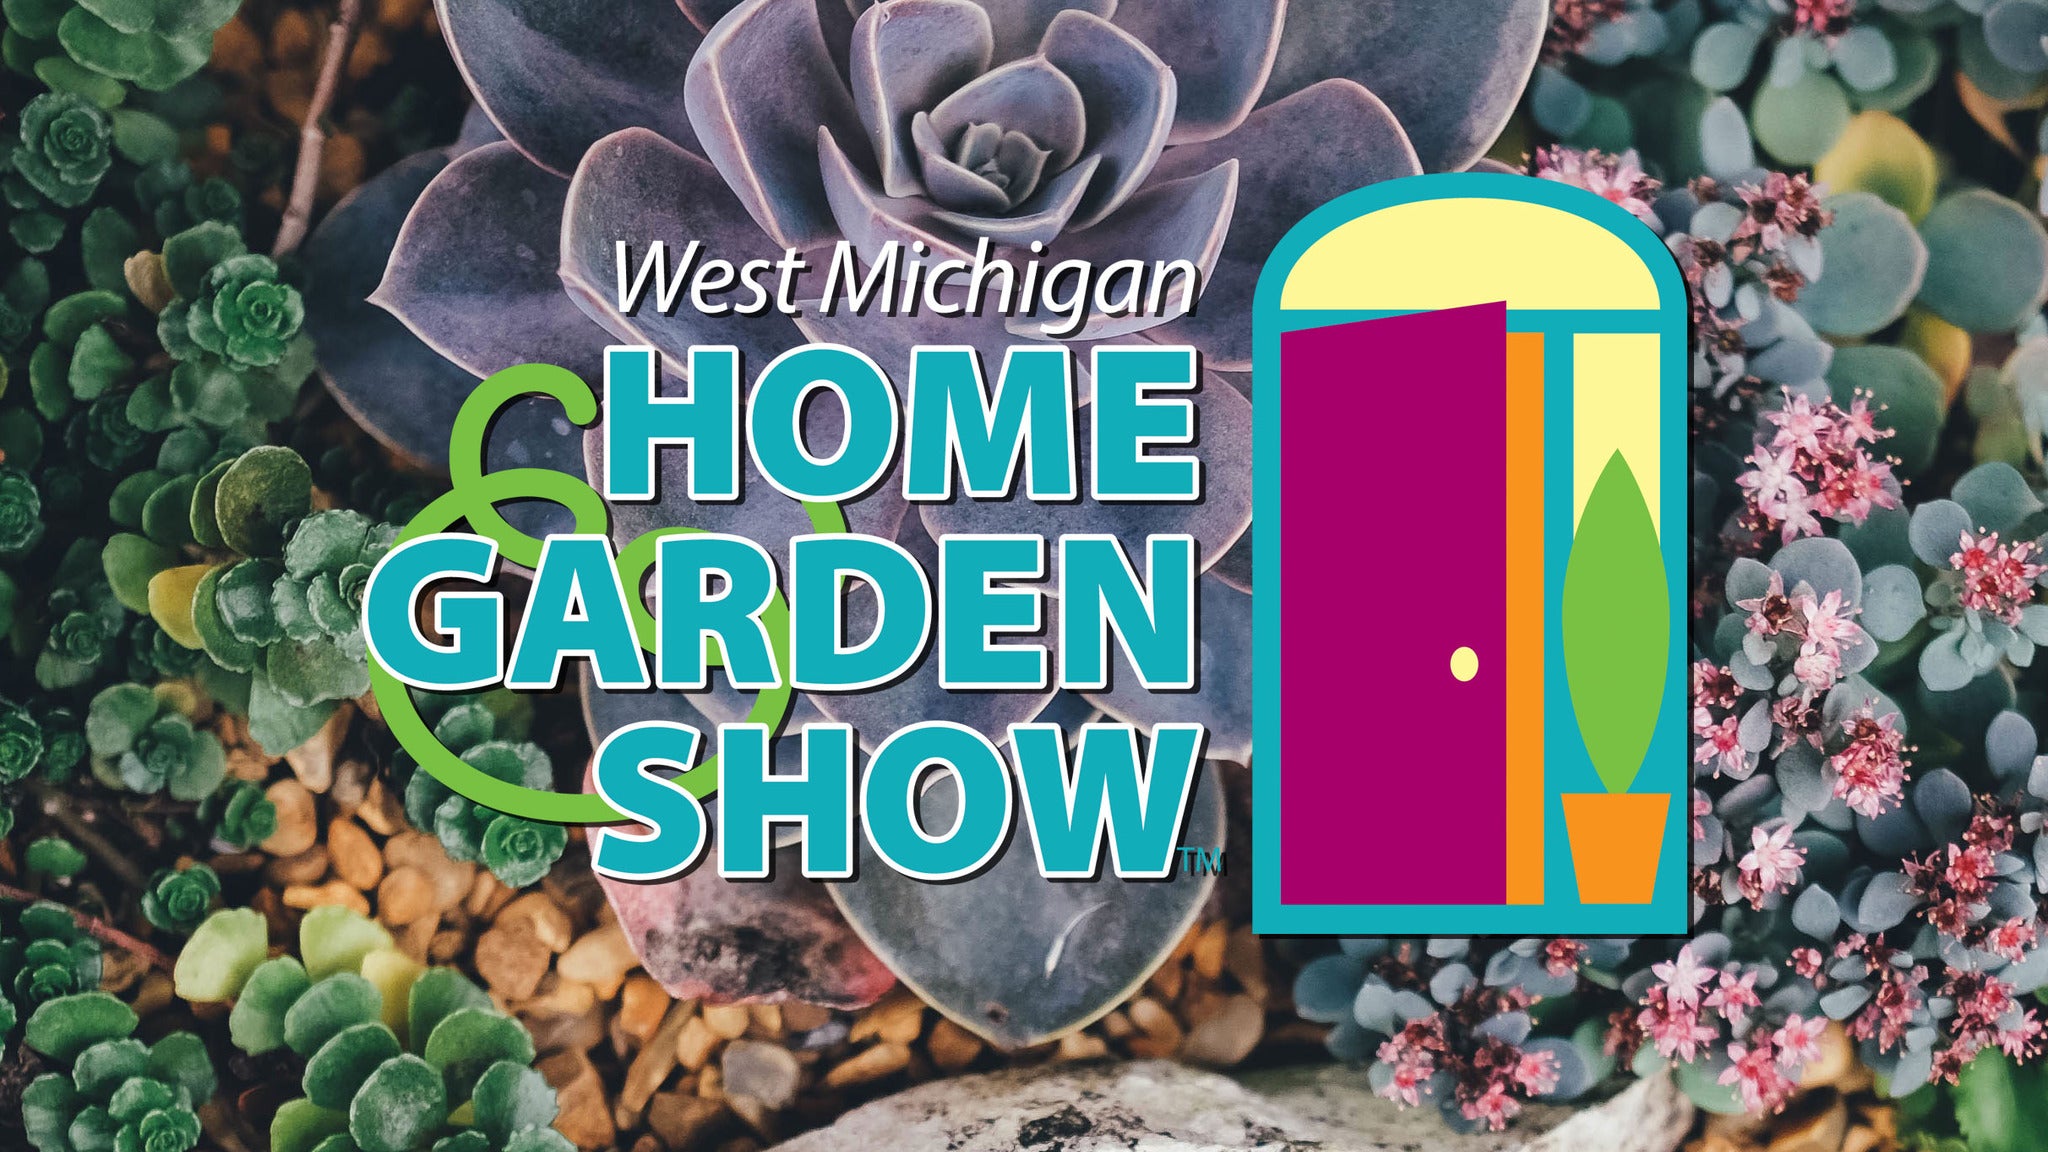 West Michigan Home & Garden Show Tickets Event Dates & Schedule